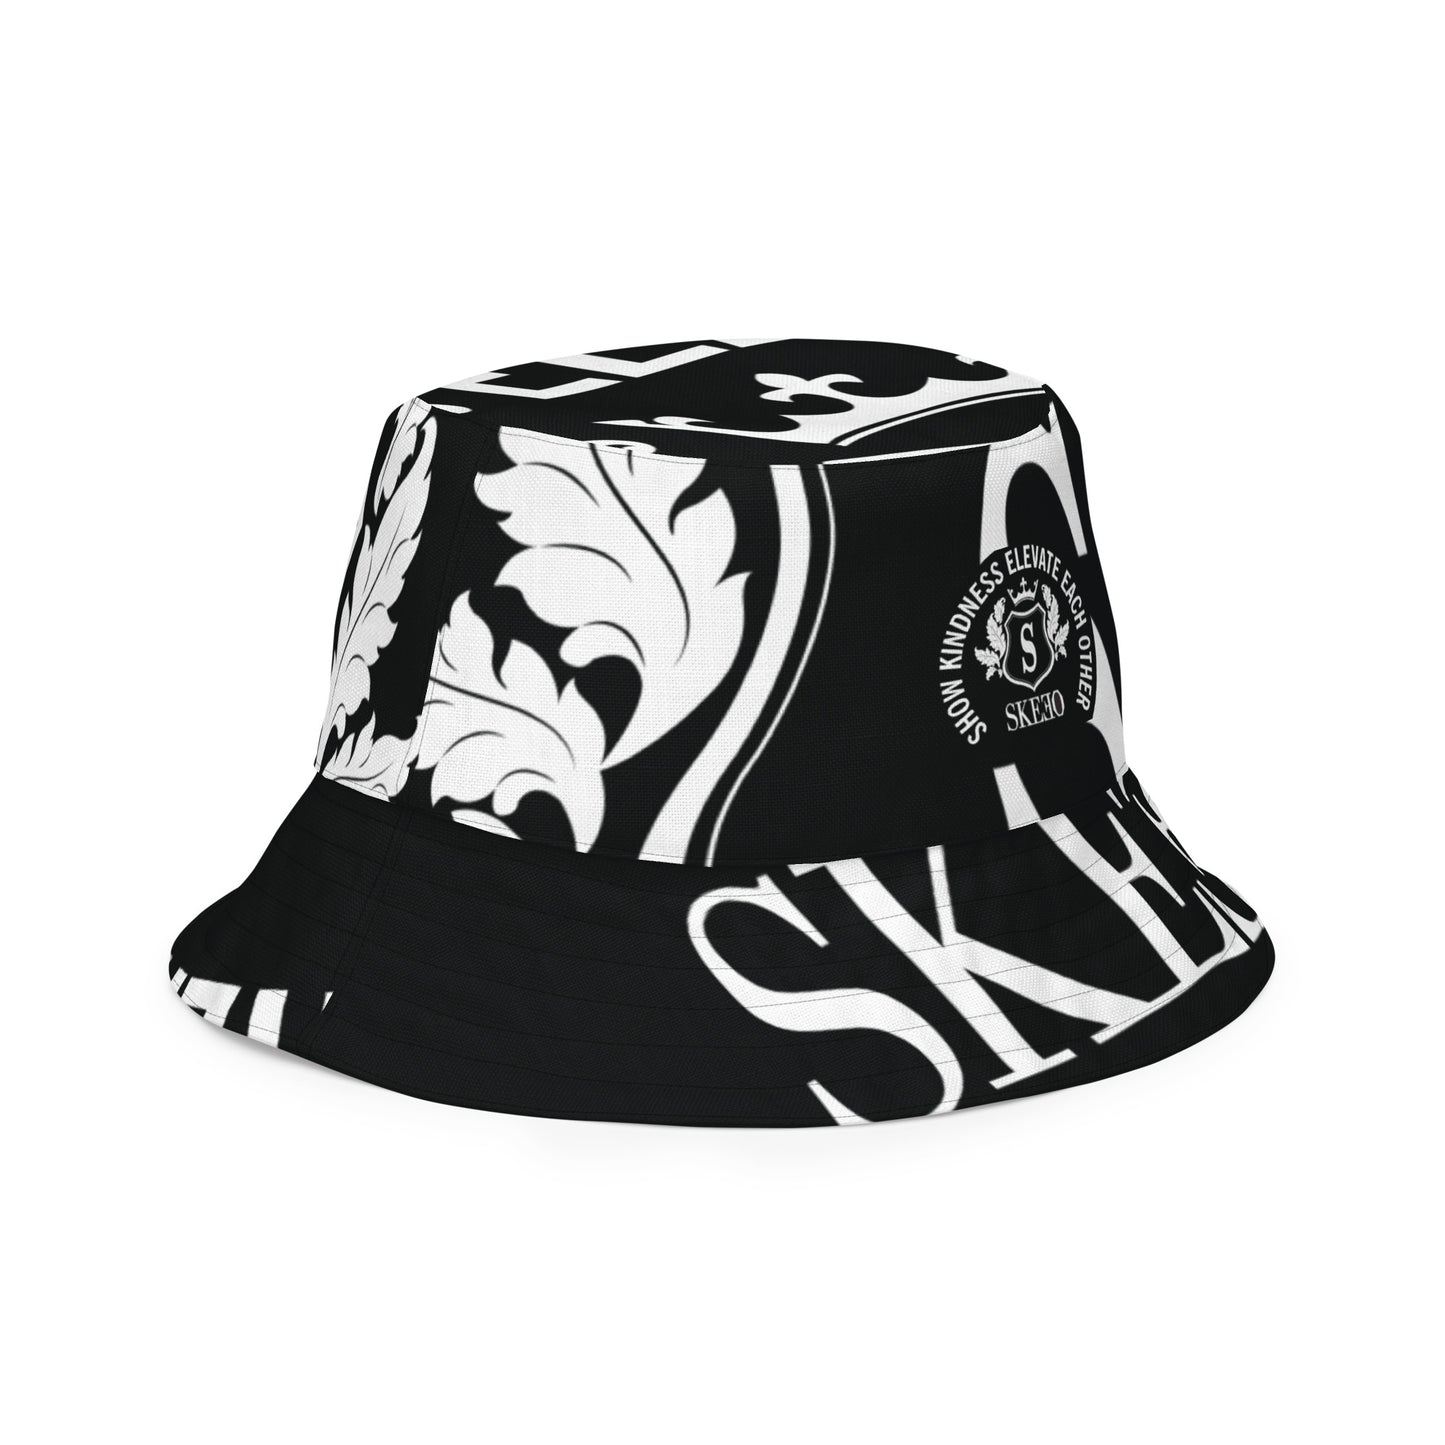 SK Black/White Reversible bucket hat